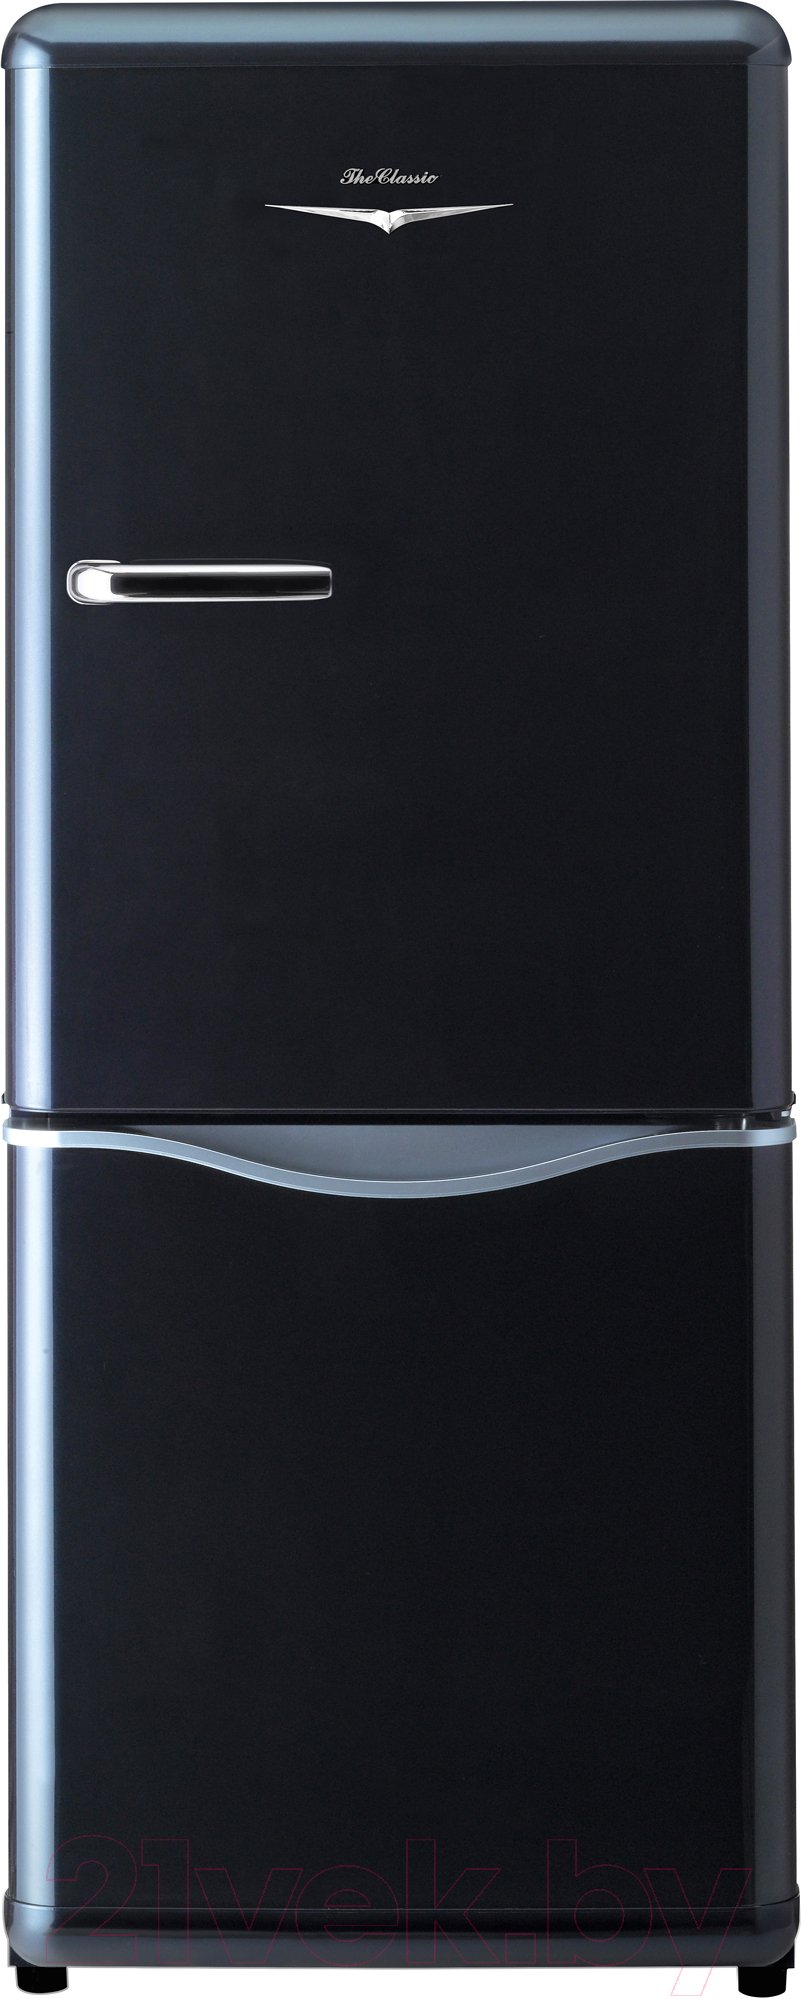 Холодильник Daewoo Electronics RN-174 NB